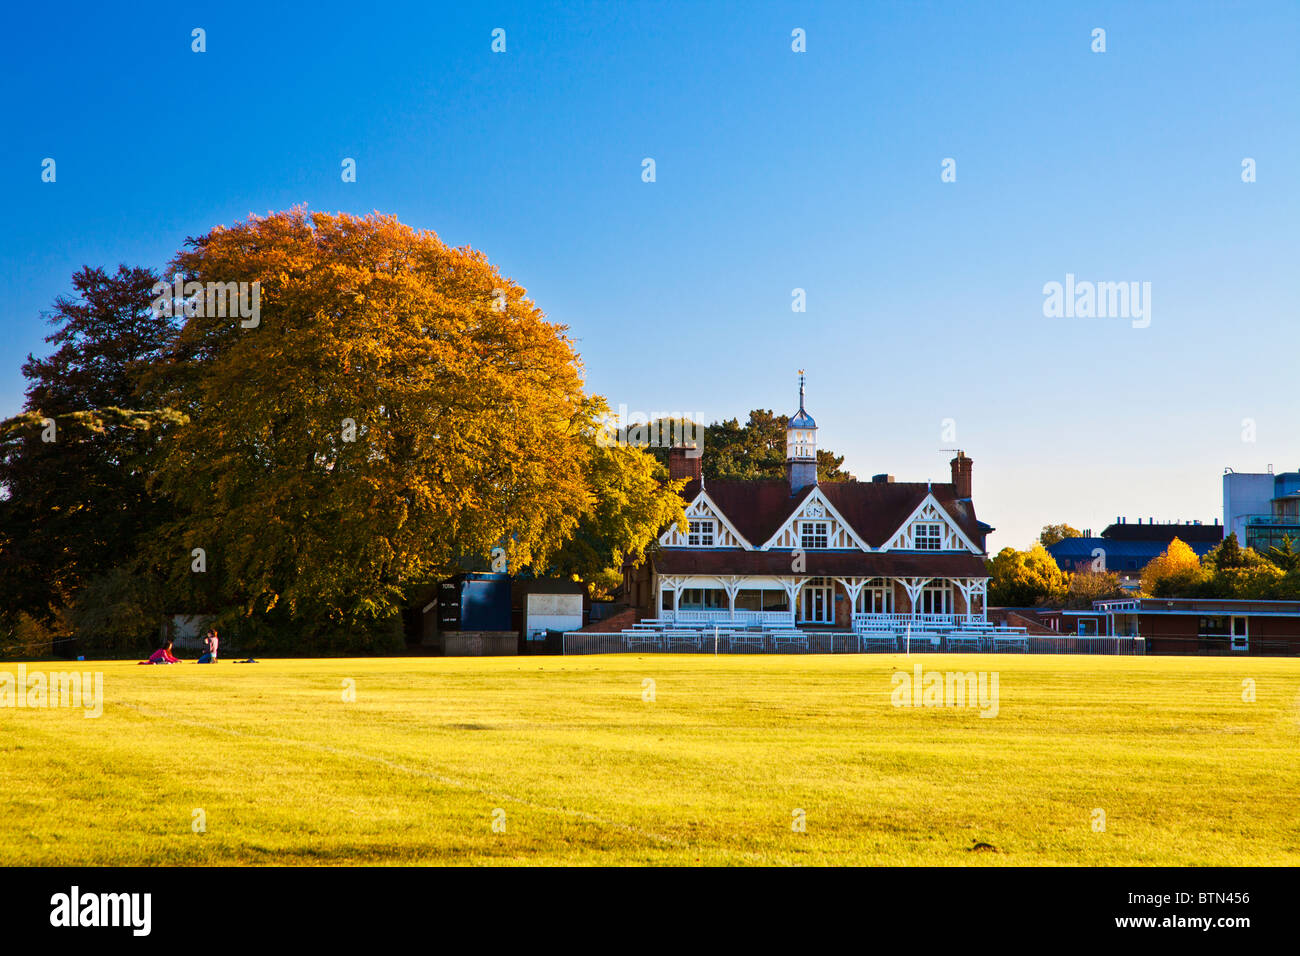 Die Cricket Pavillion in der Universität Parks, Oxford, Oxfordshire, England, UK, Großbritannien Stockfoto